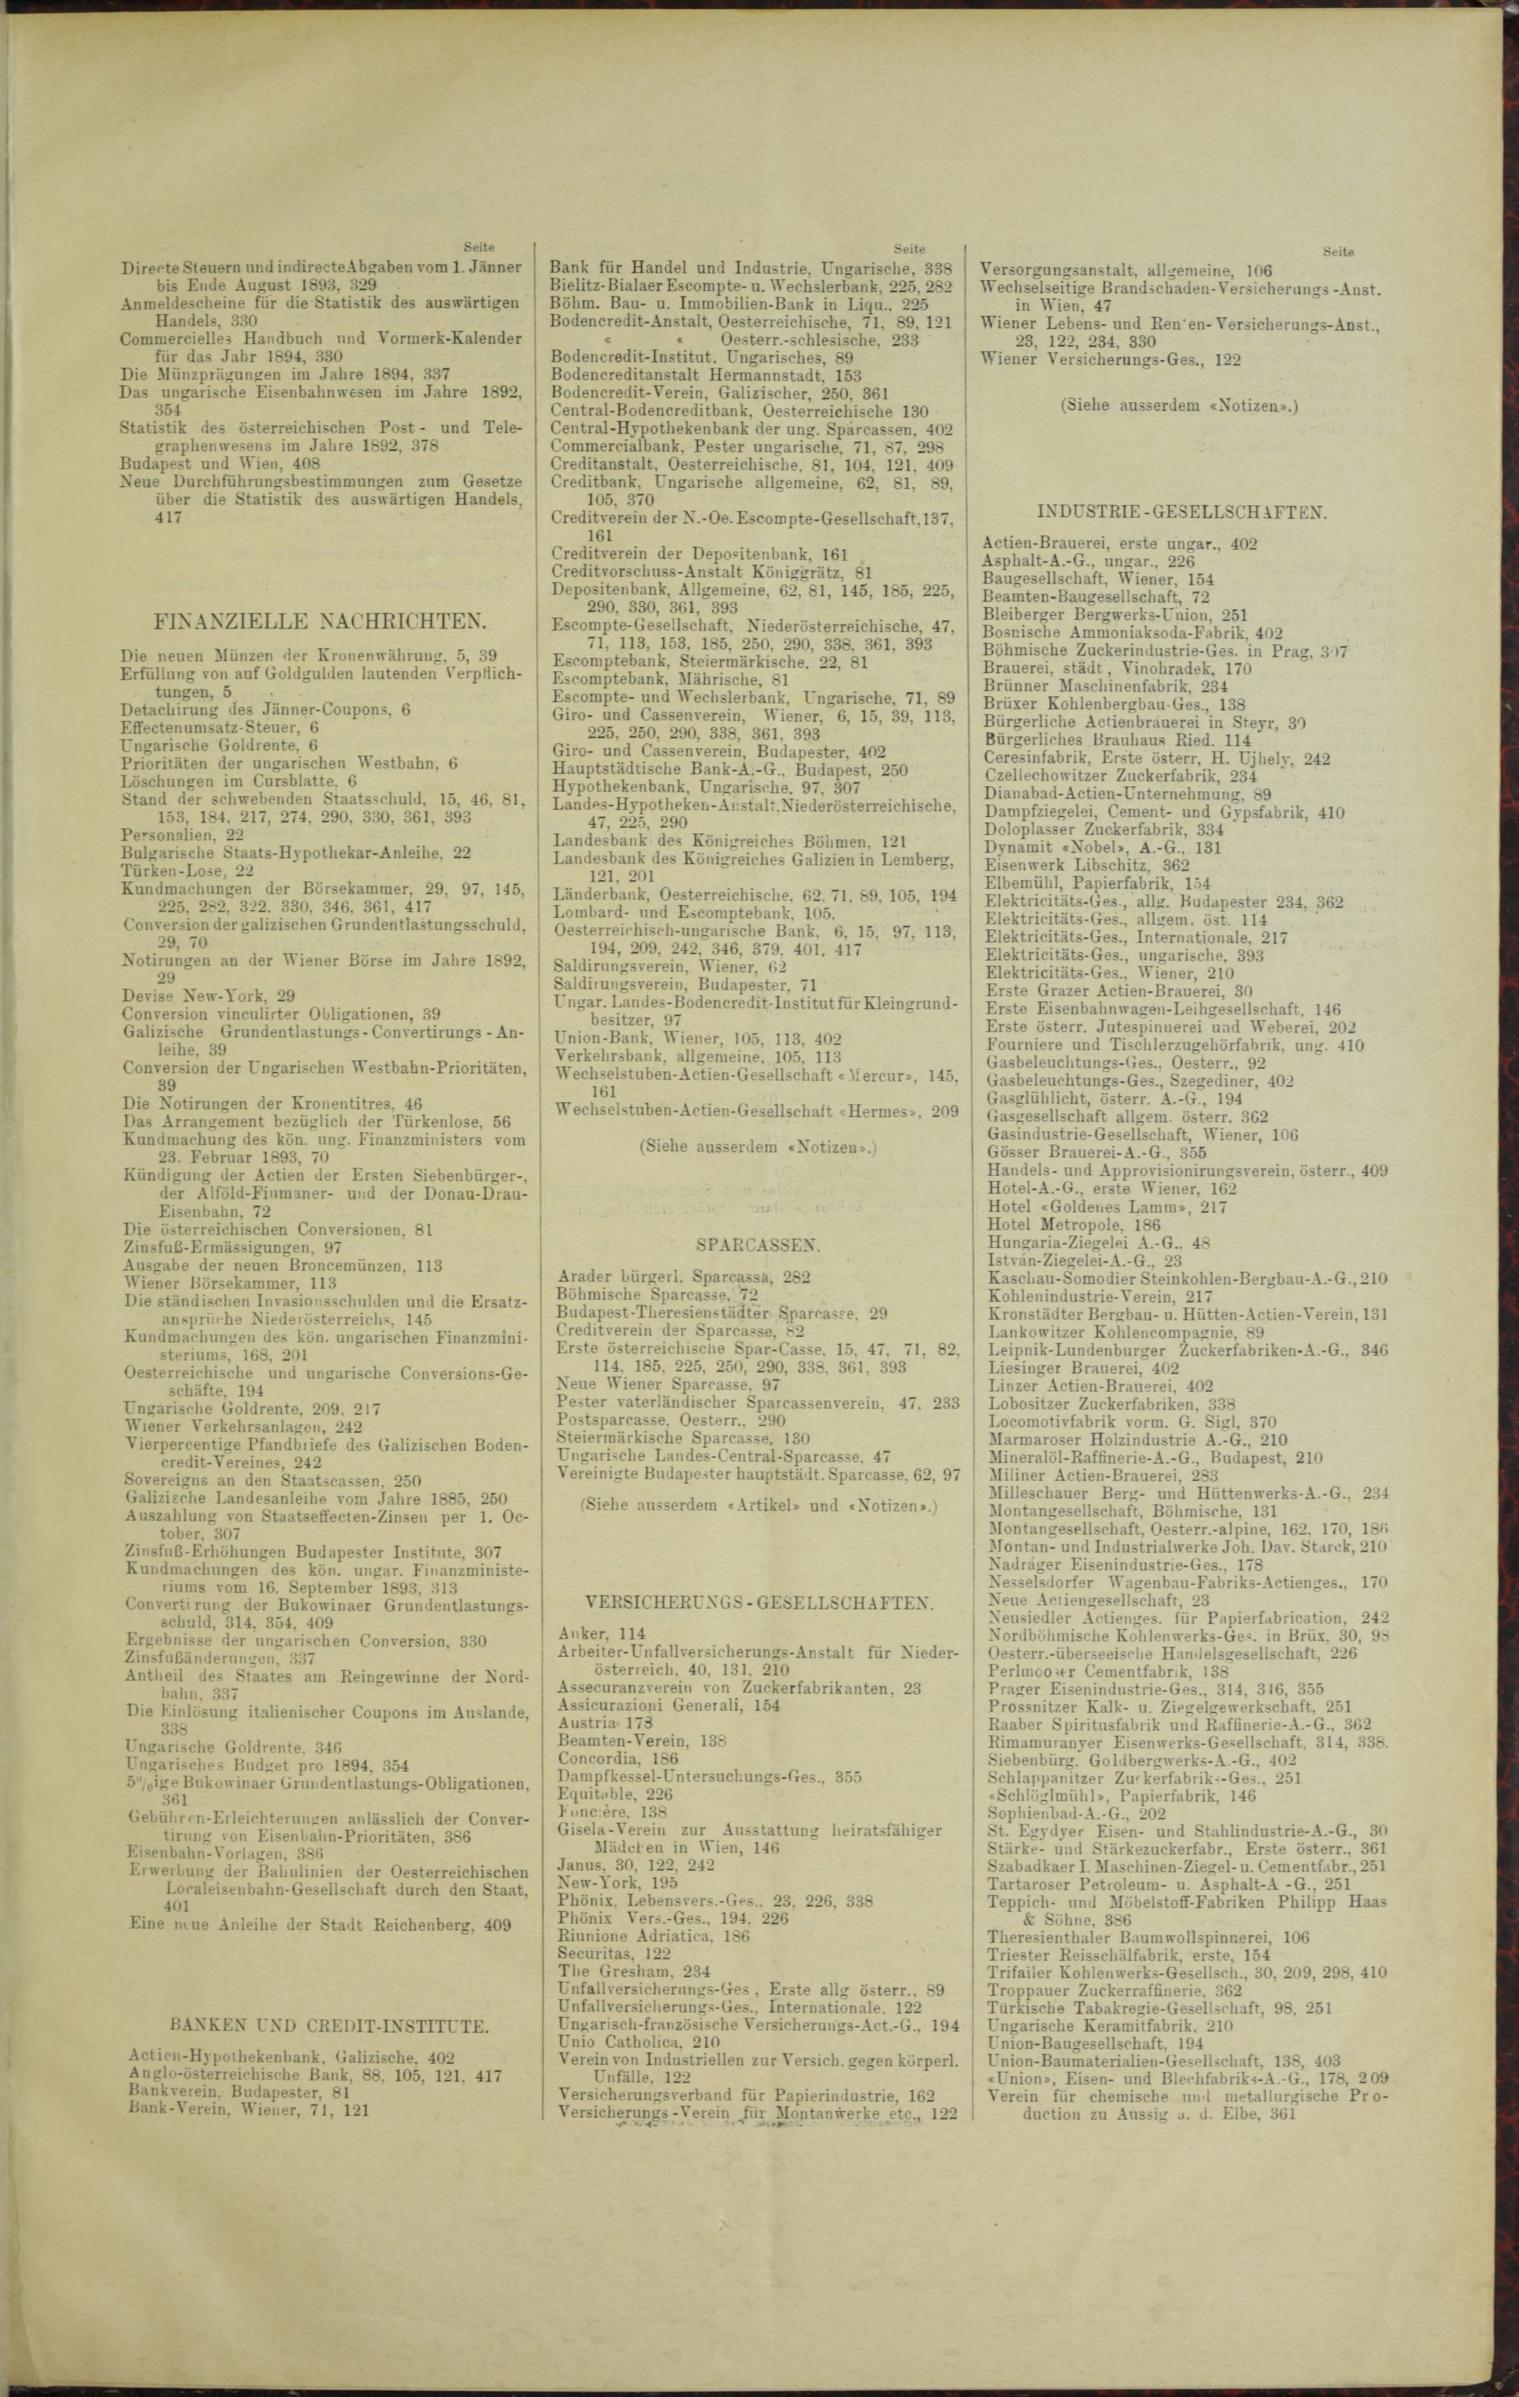 Der Tresor 05.01.1893 - Seite 11